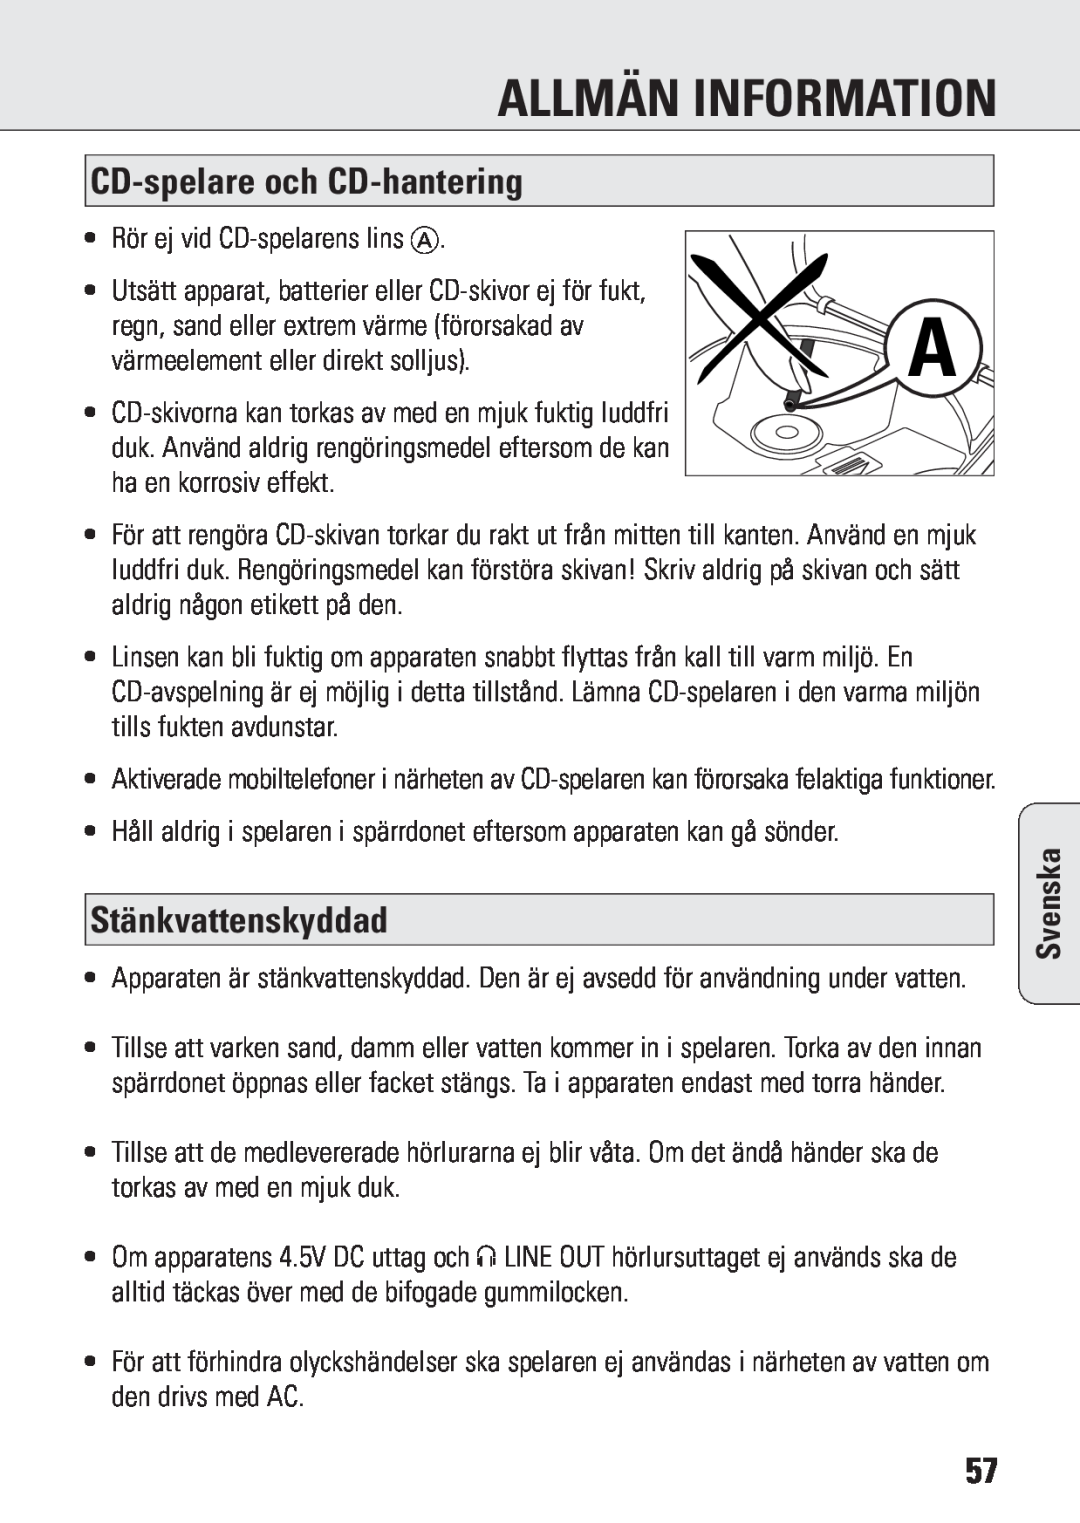 Philips ACT 7583 manual Allmän Information, CD-spelareoch CD-hantering, Stänkvattenskyddad, Svenska 